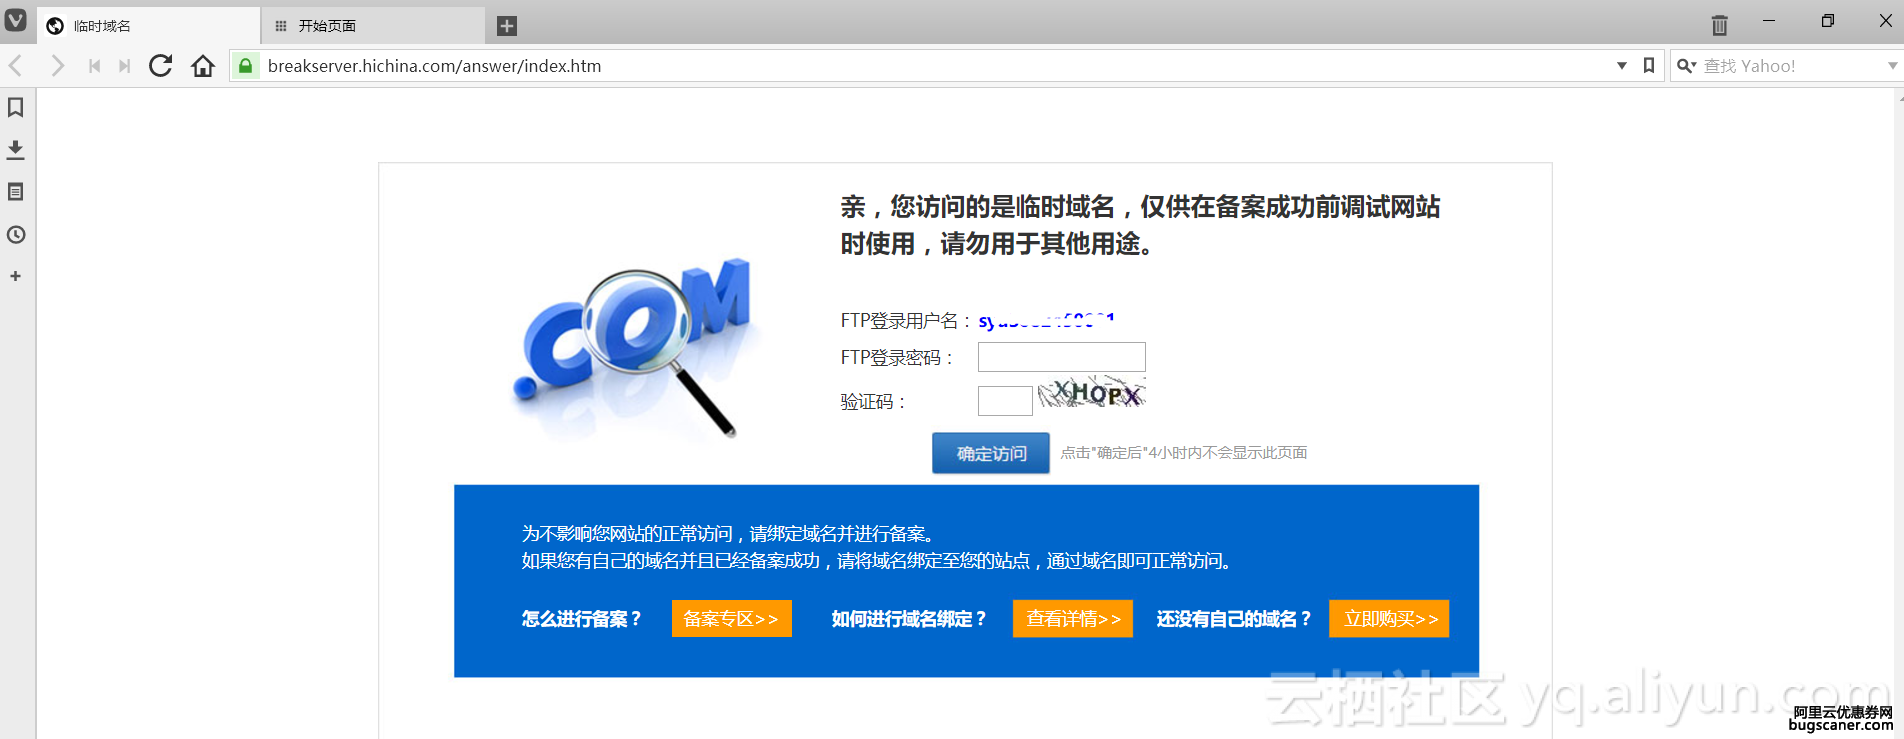 网站seo
跨境电商做独立站优化的一些小技巧(图)seo网站